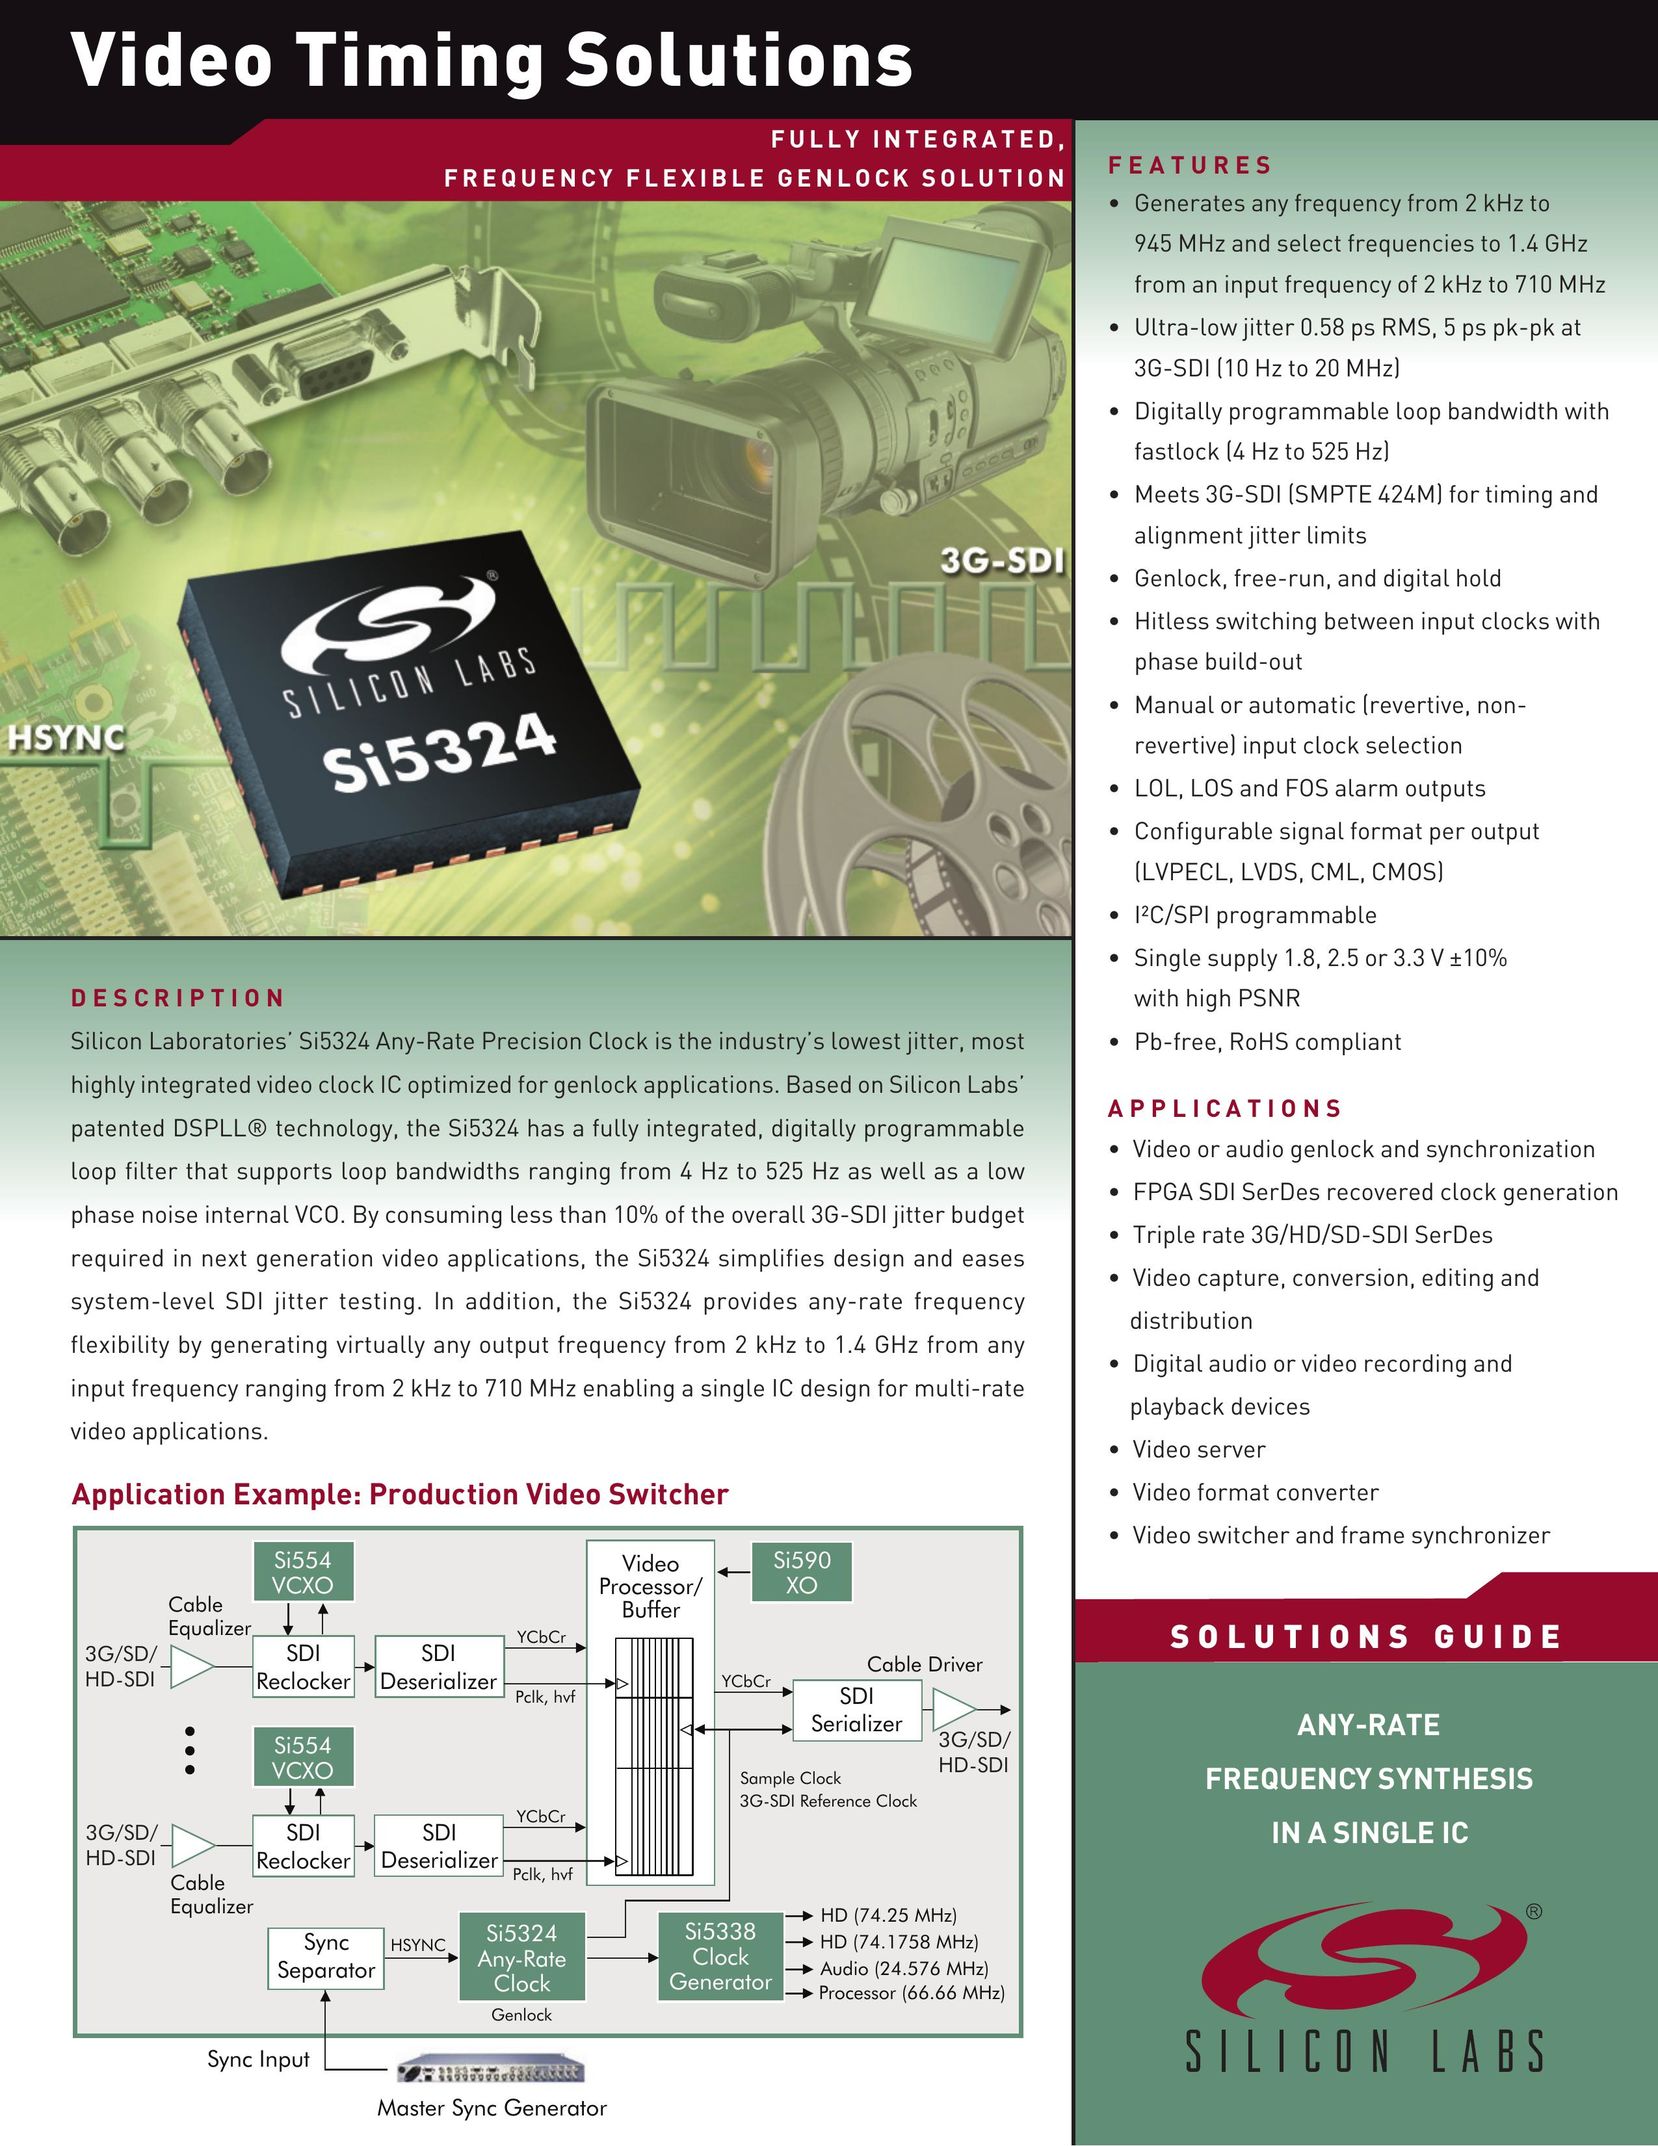 Silicon Laboratories SI5324 Clock User Manual